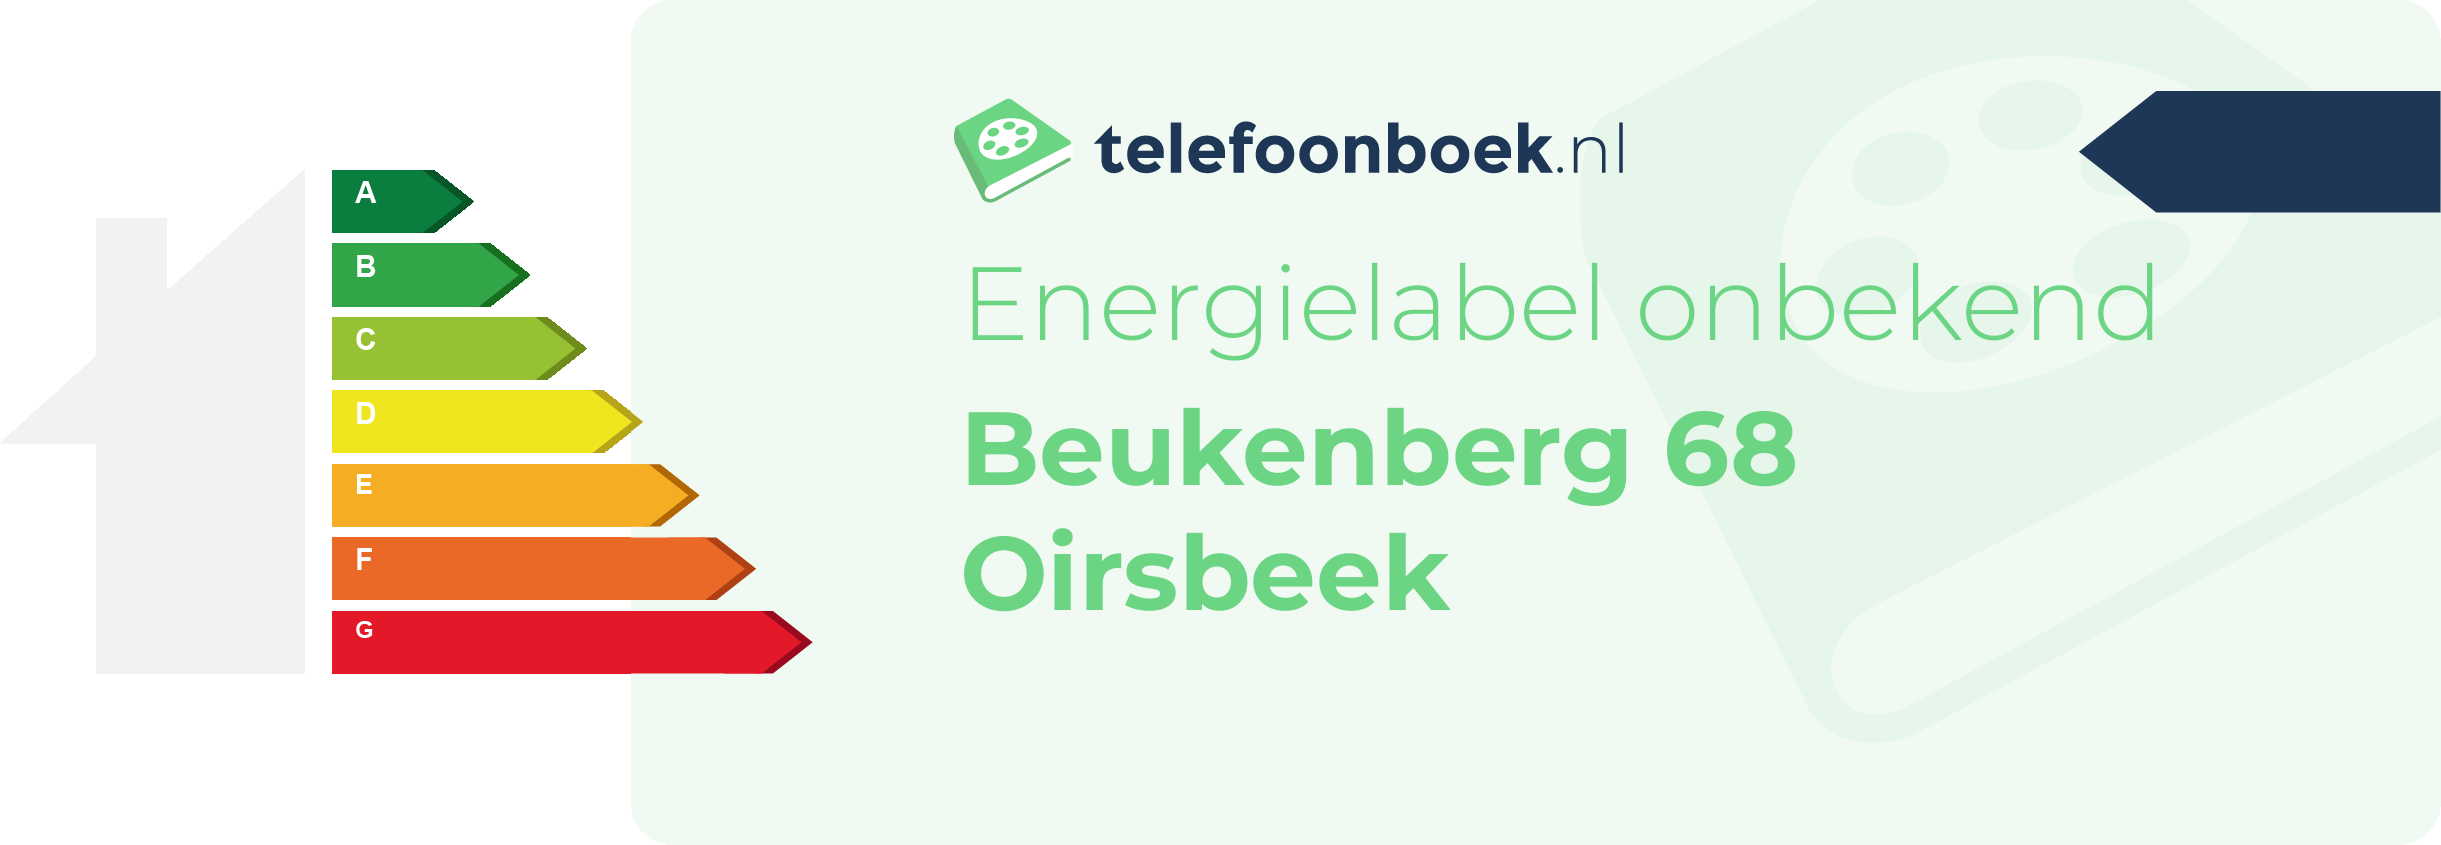 Energielabel Beukenberg 68 Oirsbeek